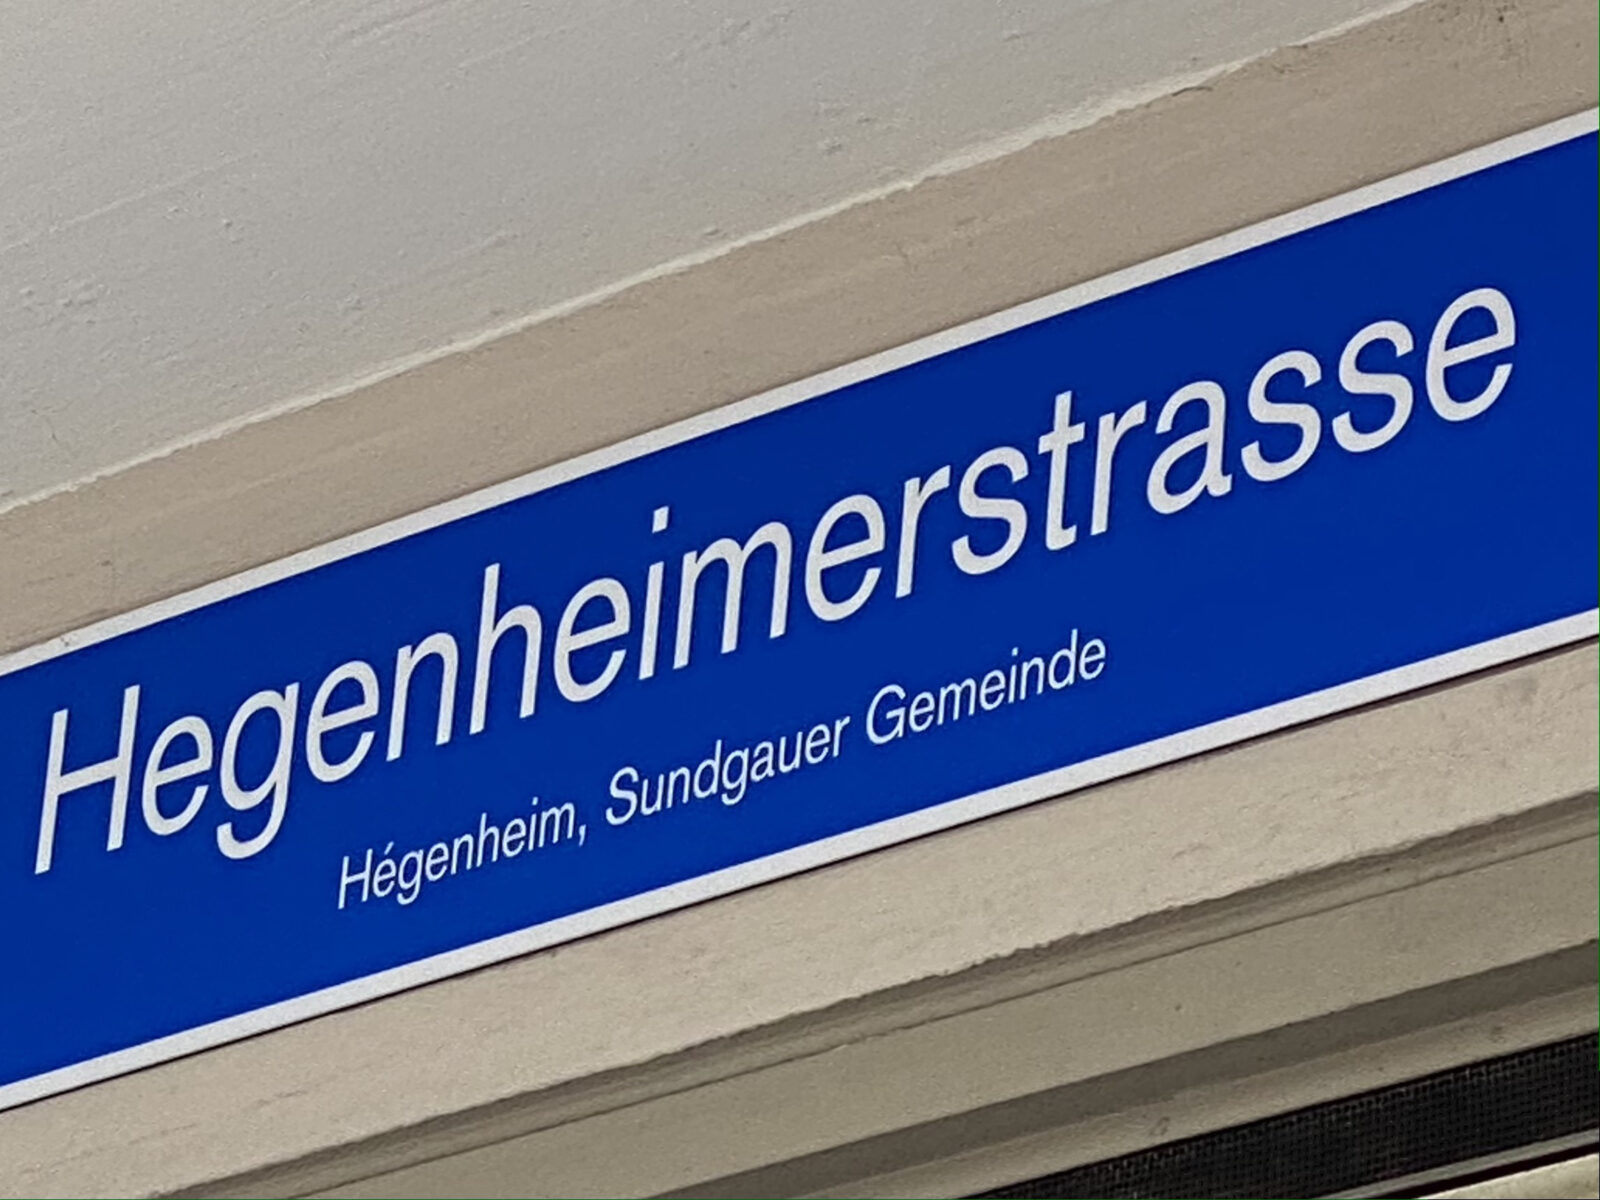 Hegenheimerstrasse